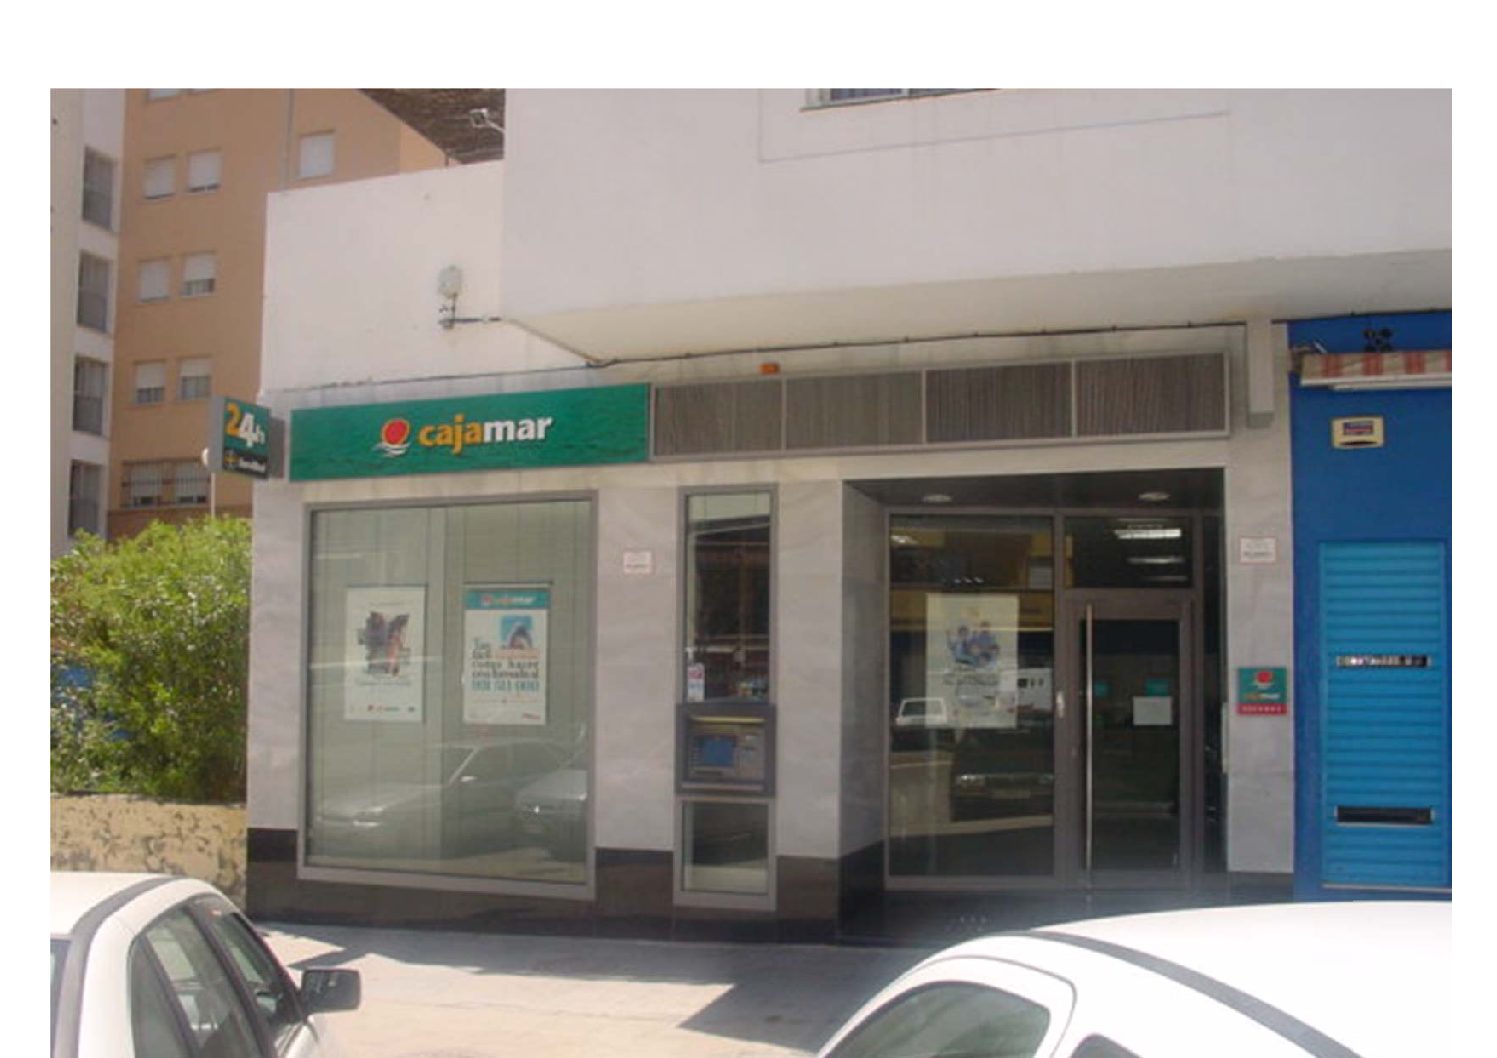 Cajamar Office in Algeciras. Cádiz. 2002.